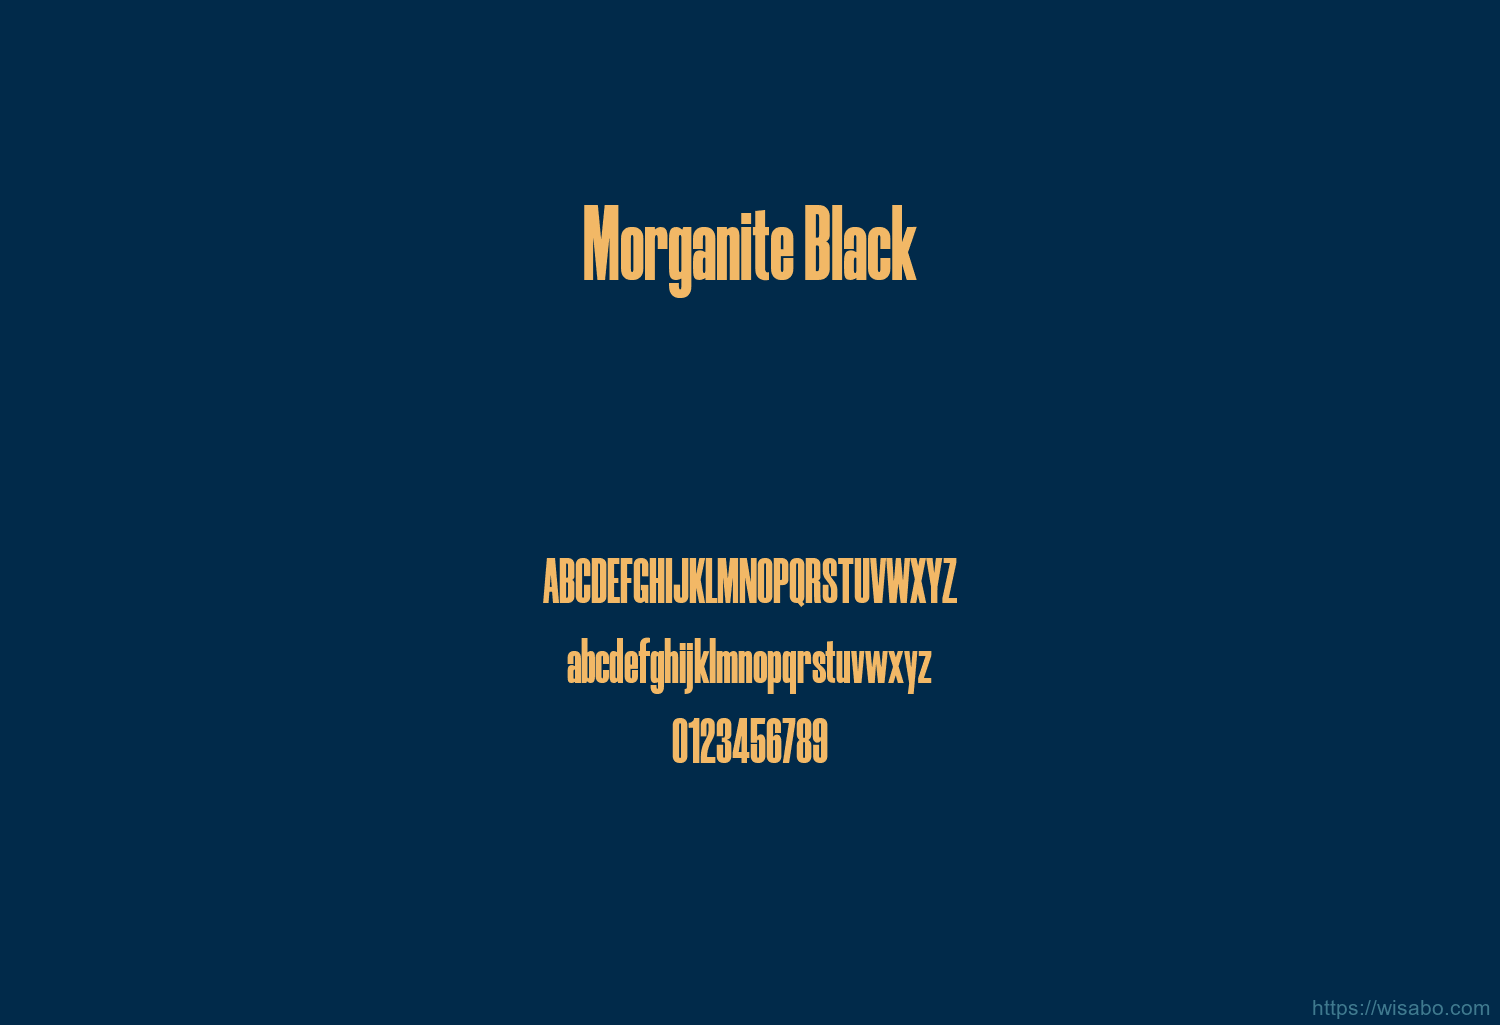 Morganite Black